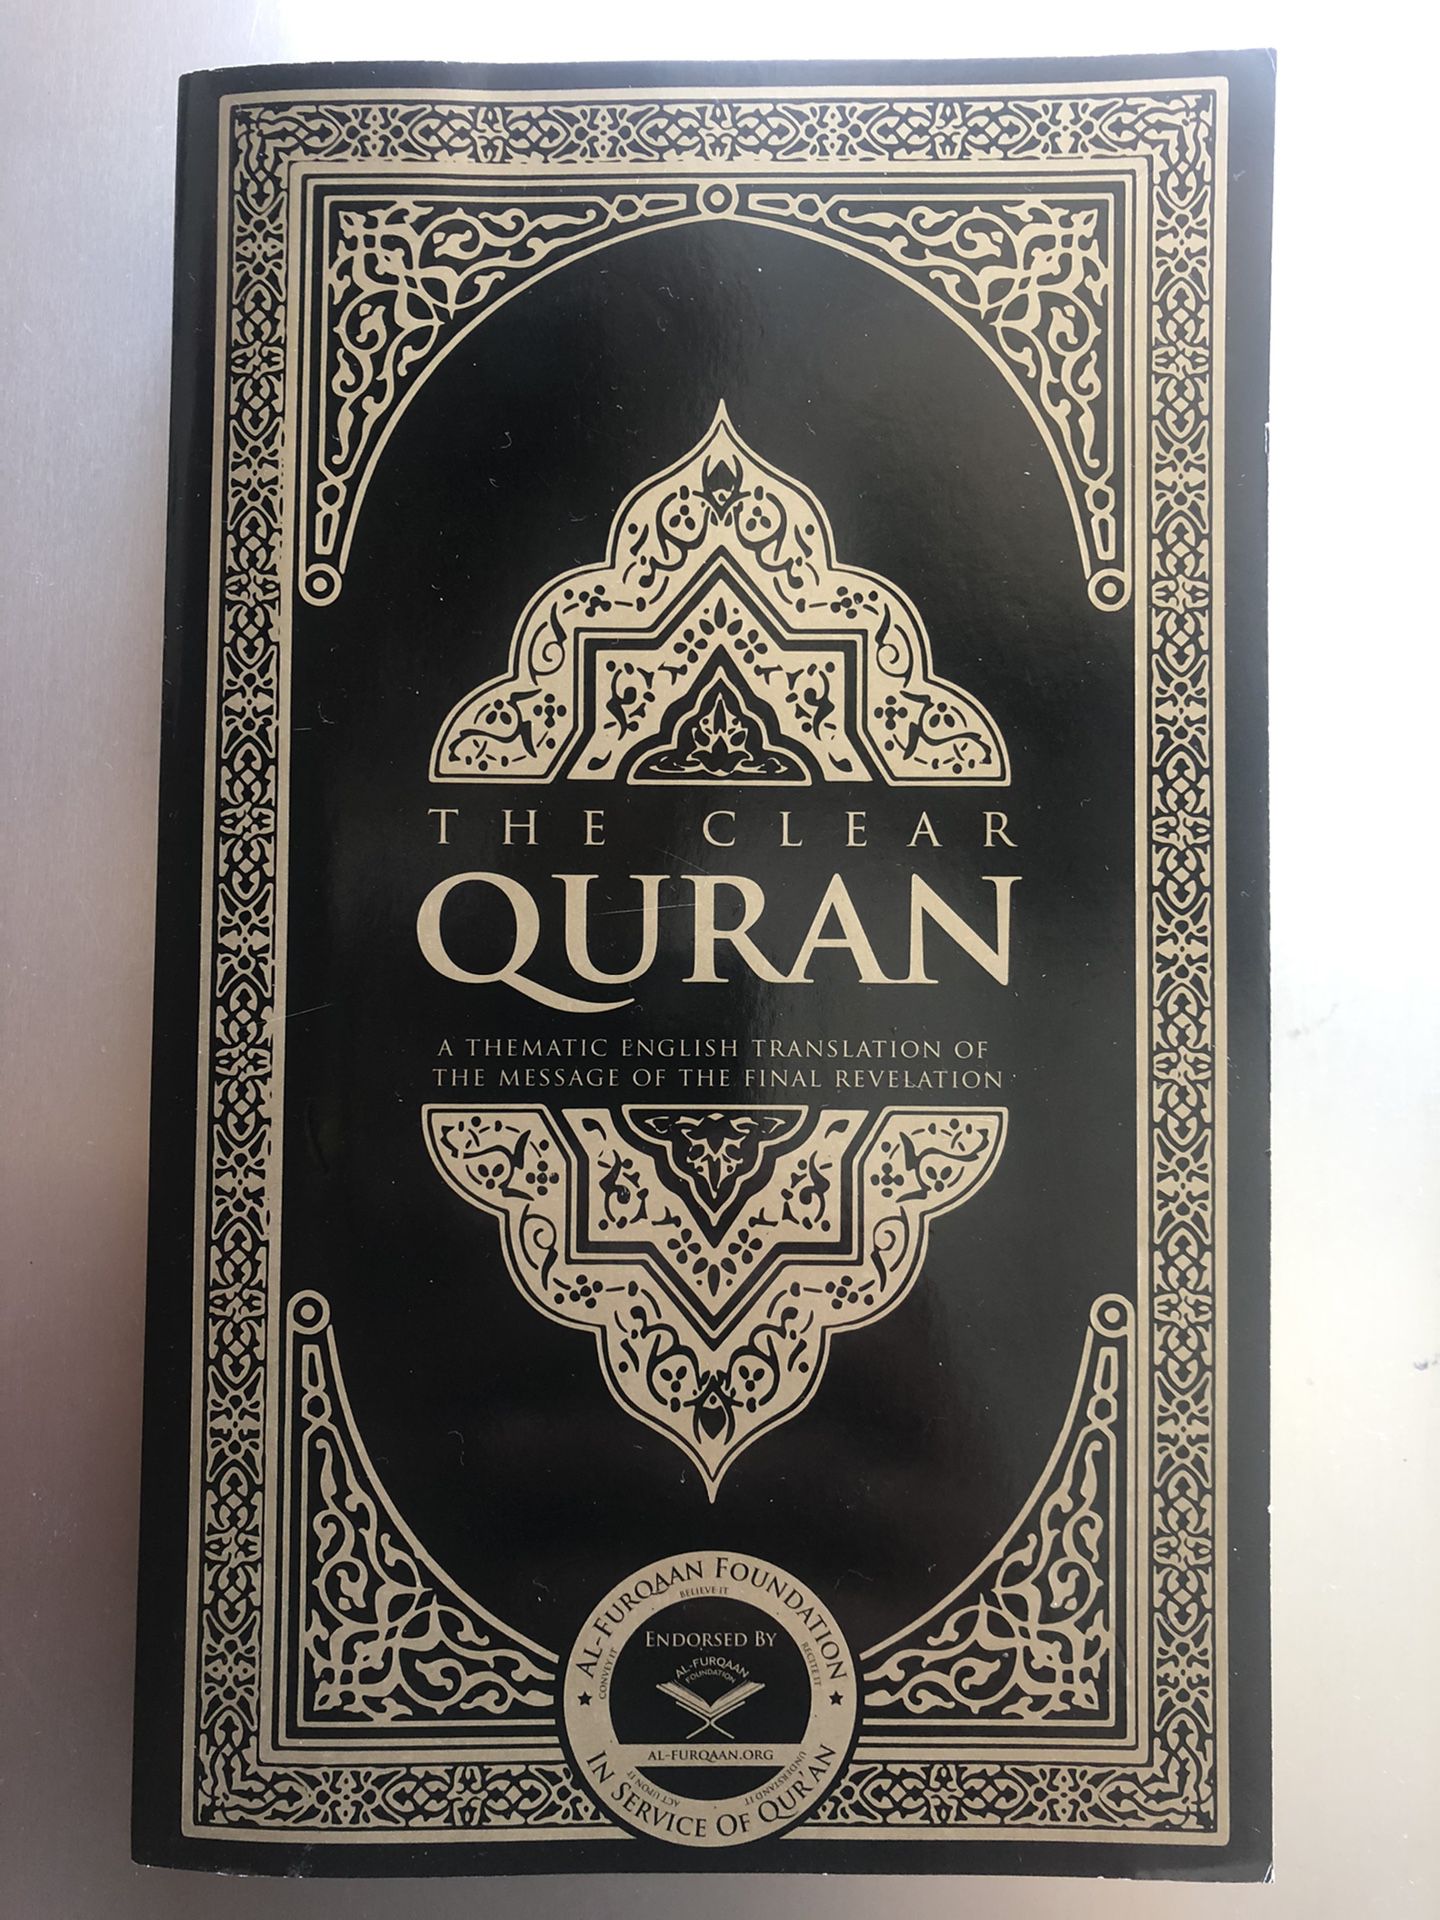 Free Quran book.